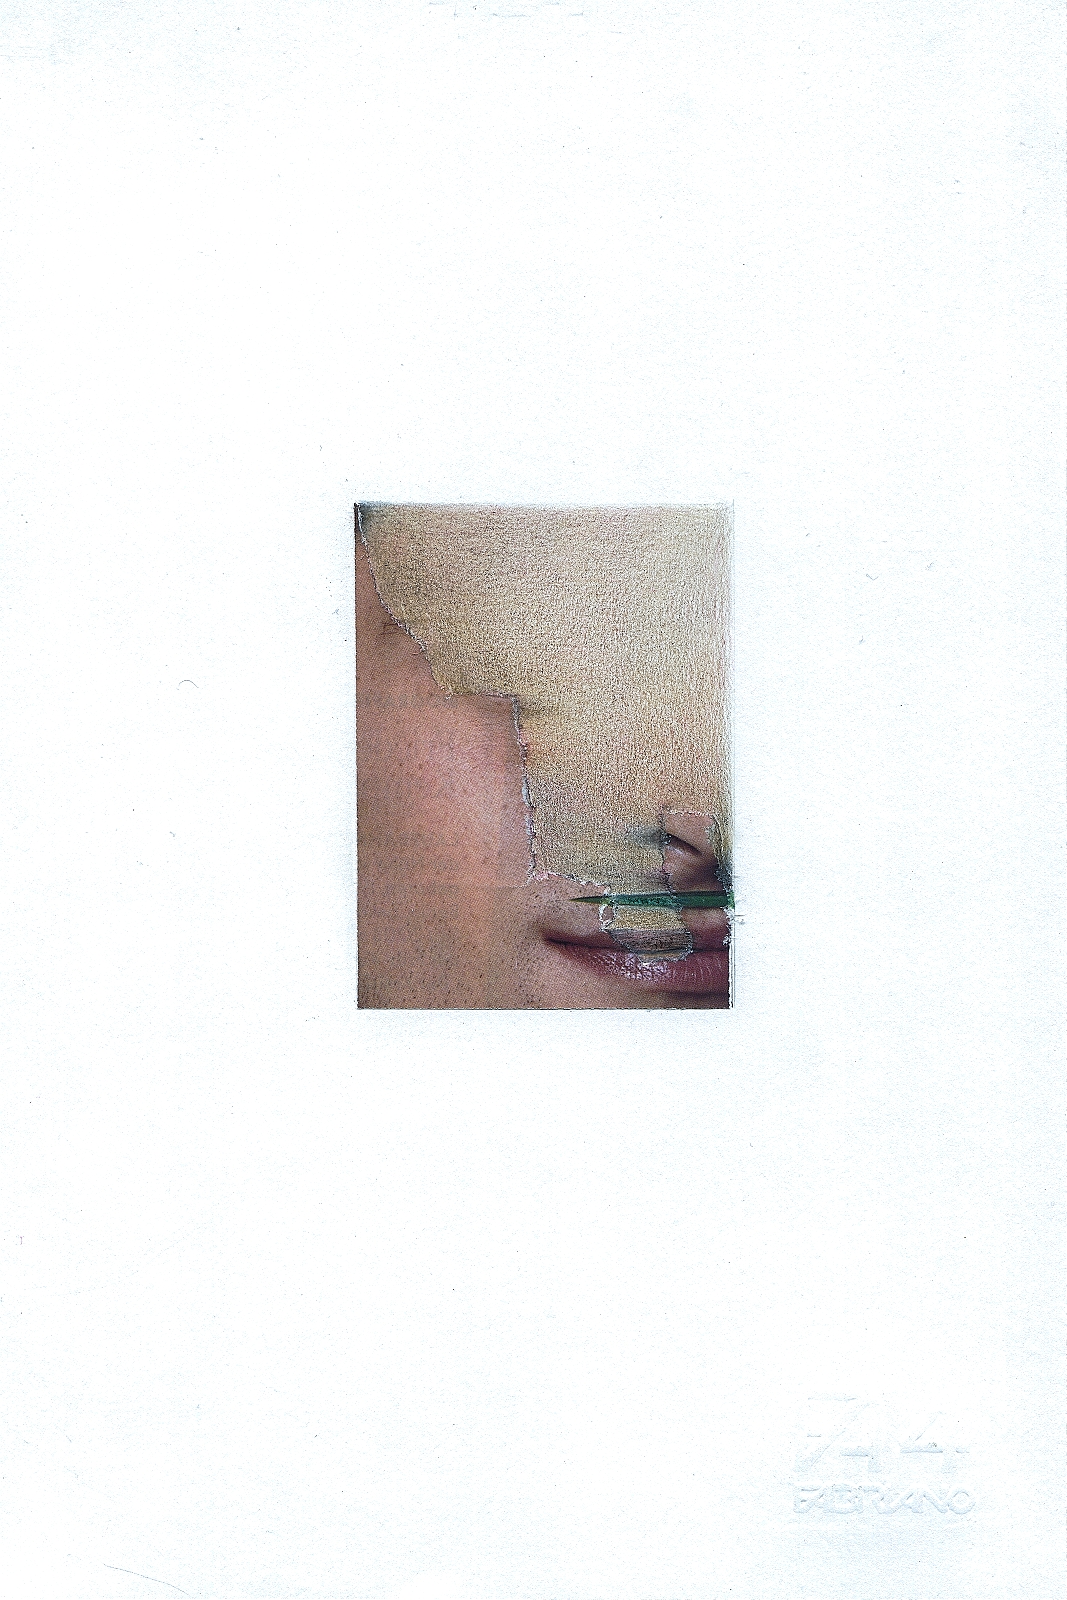 "Ancient", 2013, pencil, collage, 16.5 x 24 cm